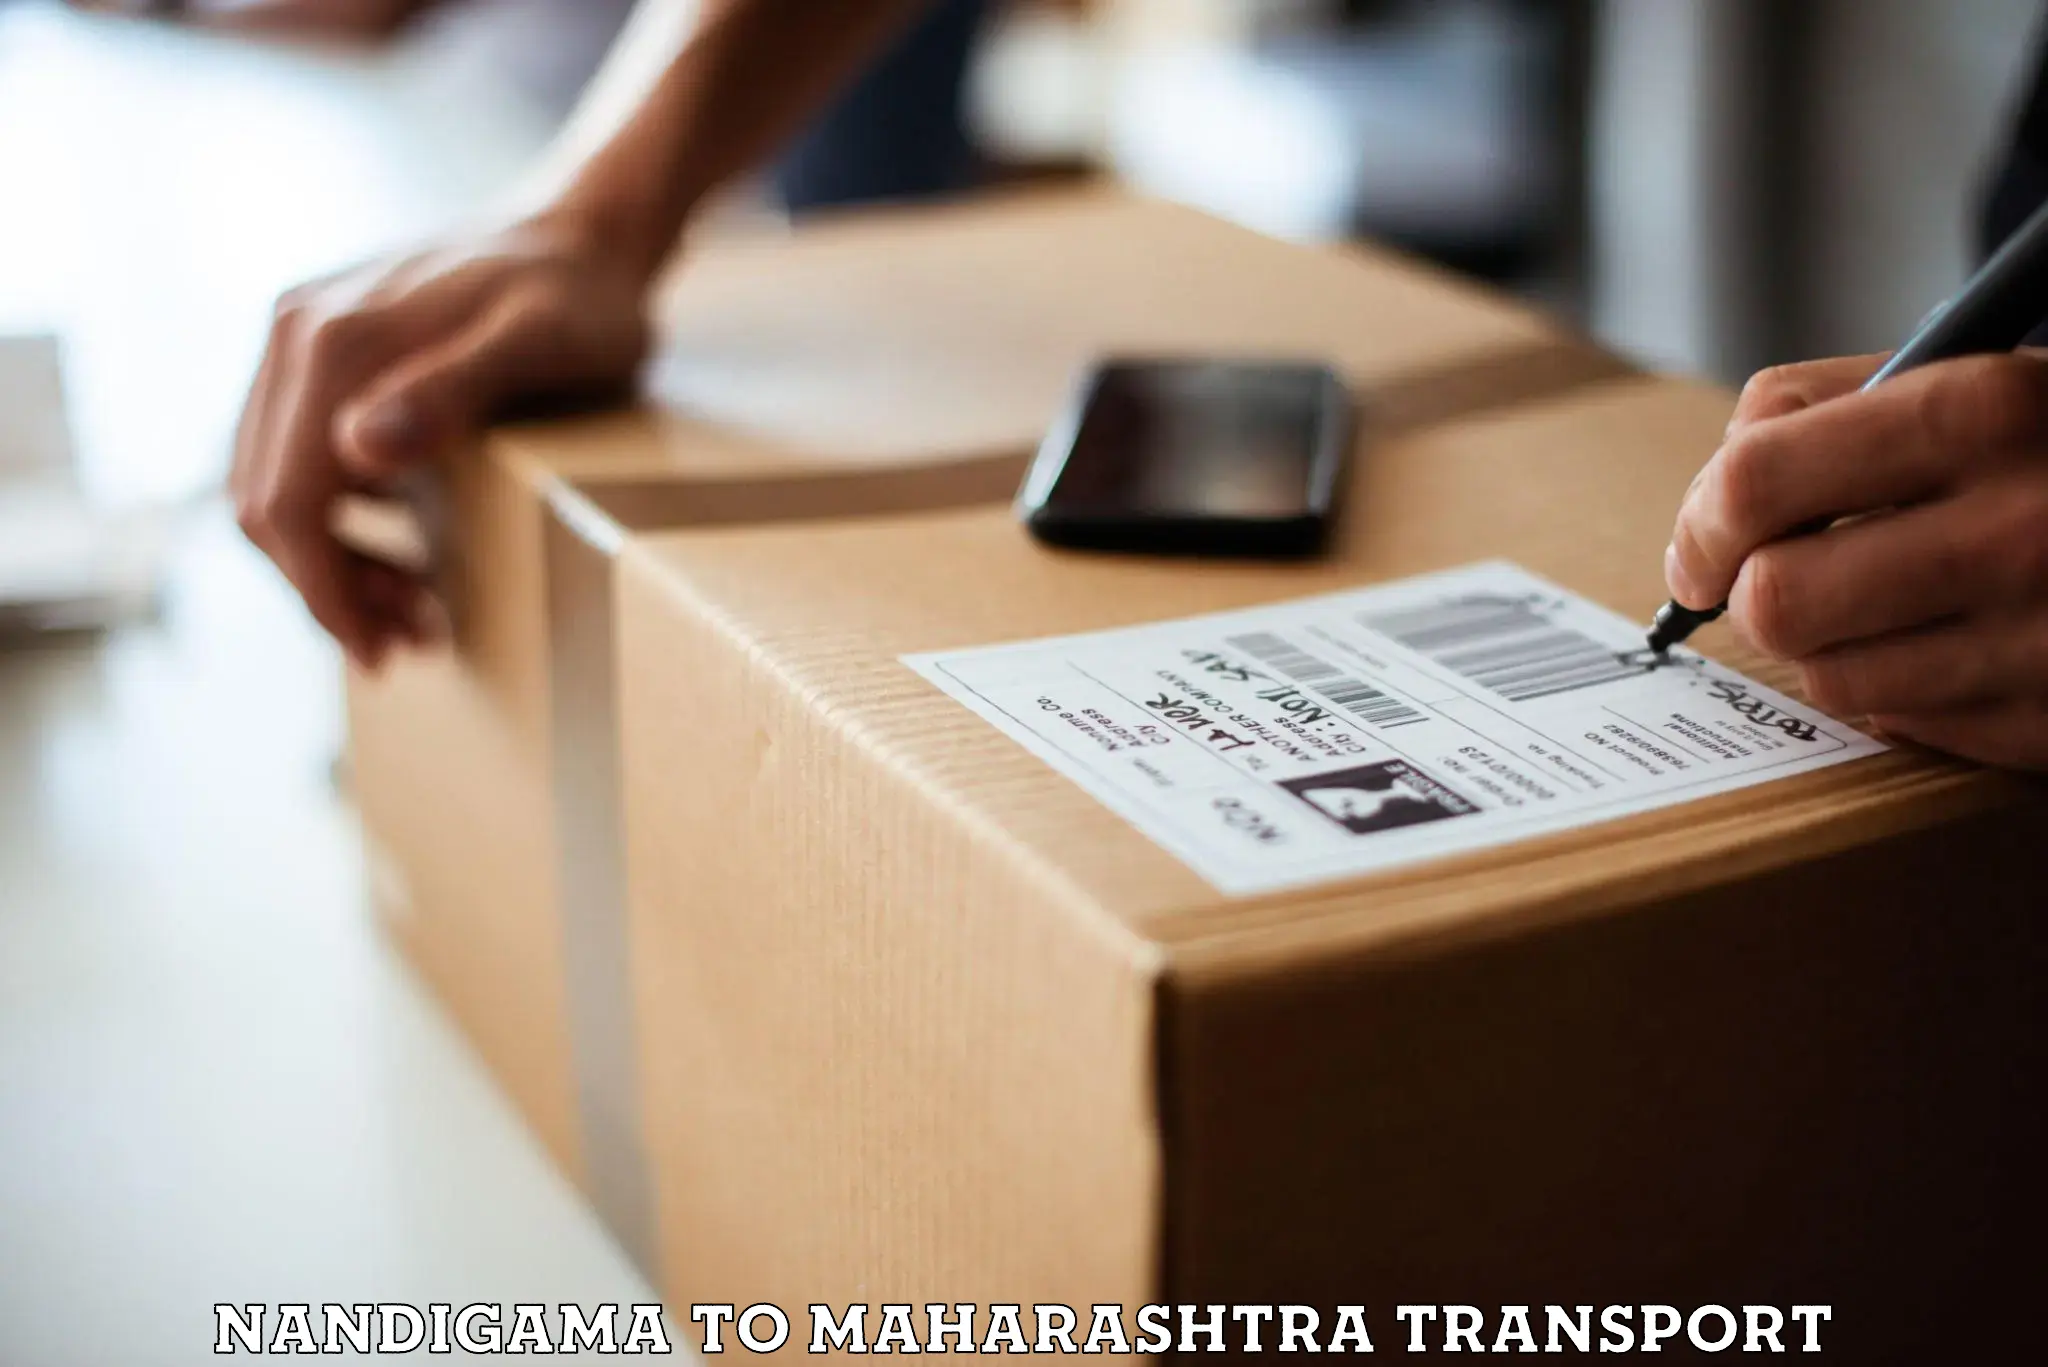 Daily transport service Nandigama to Mumbai University